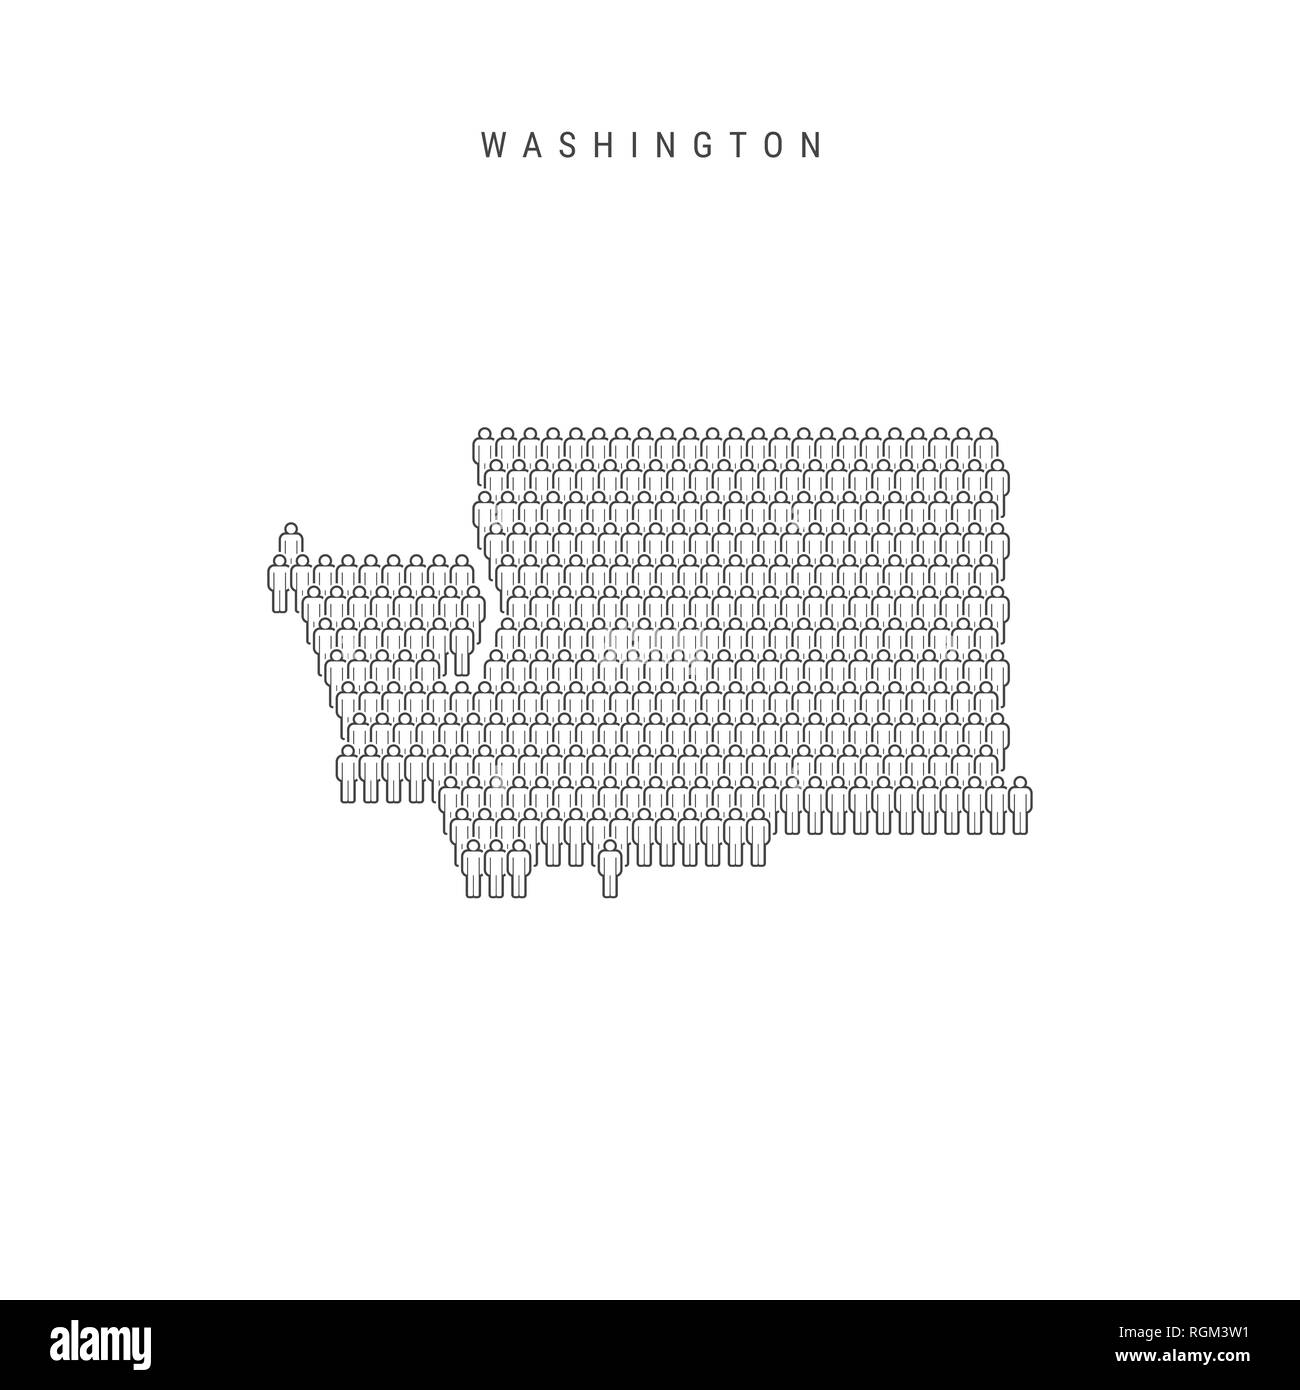 Leute Karte von Washington, US-Staat. Stilisierte Silhouette, Leute in der Form einer Karte von Washington. Washington Bevölkerung. Abbildung: Isolieren Stockfoto